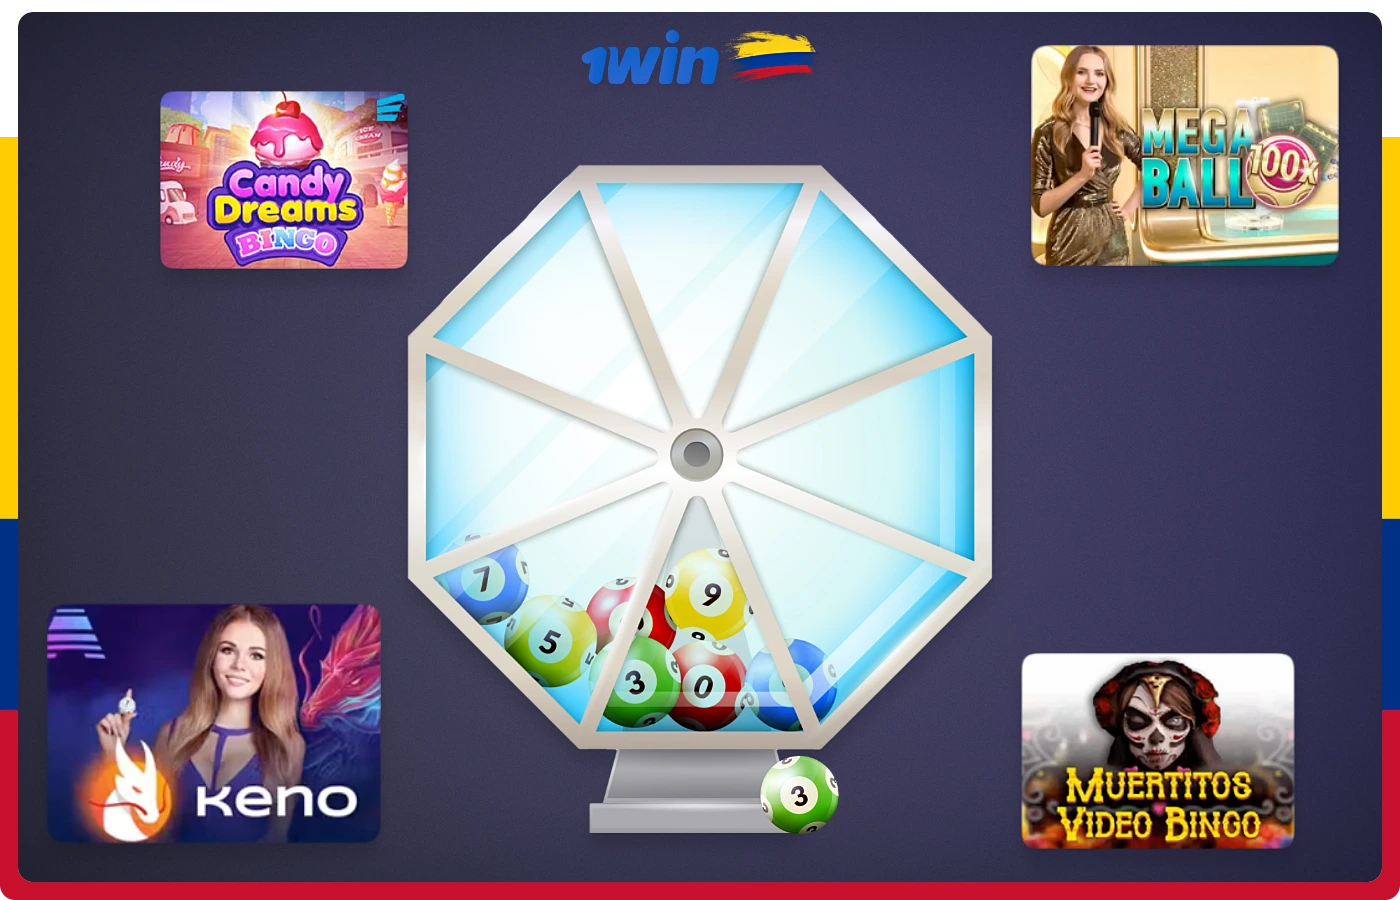 1win Colombia ofrece a sus usuarios decenas de opciones de lotería